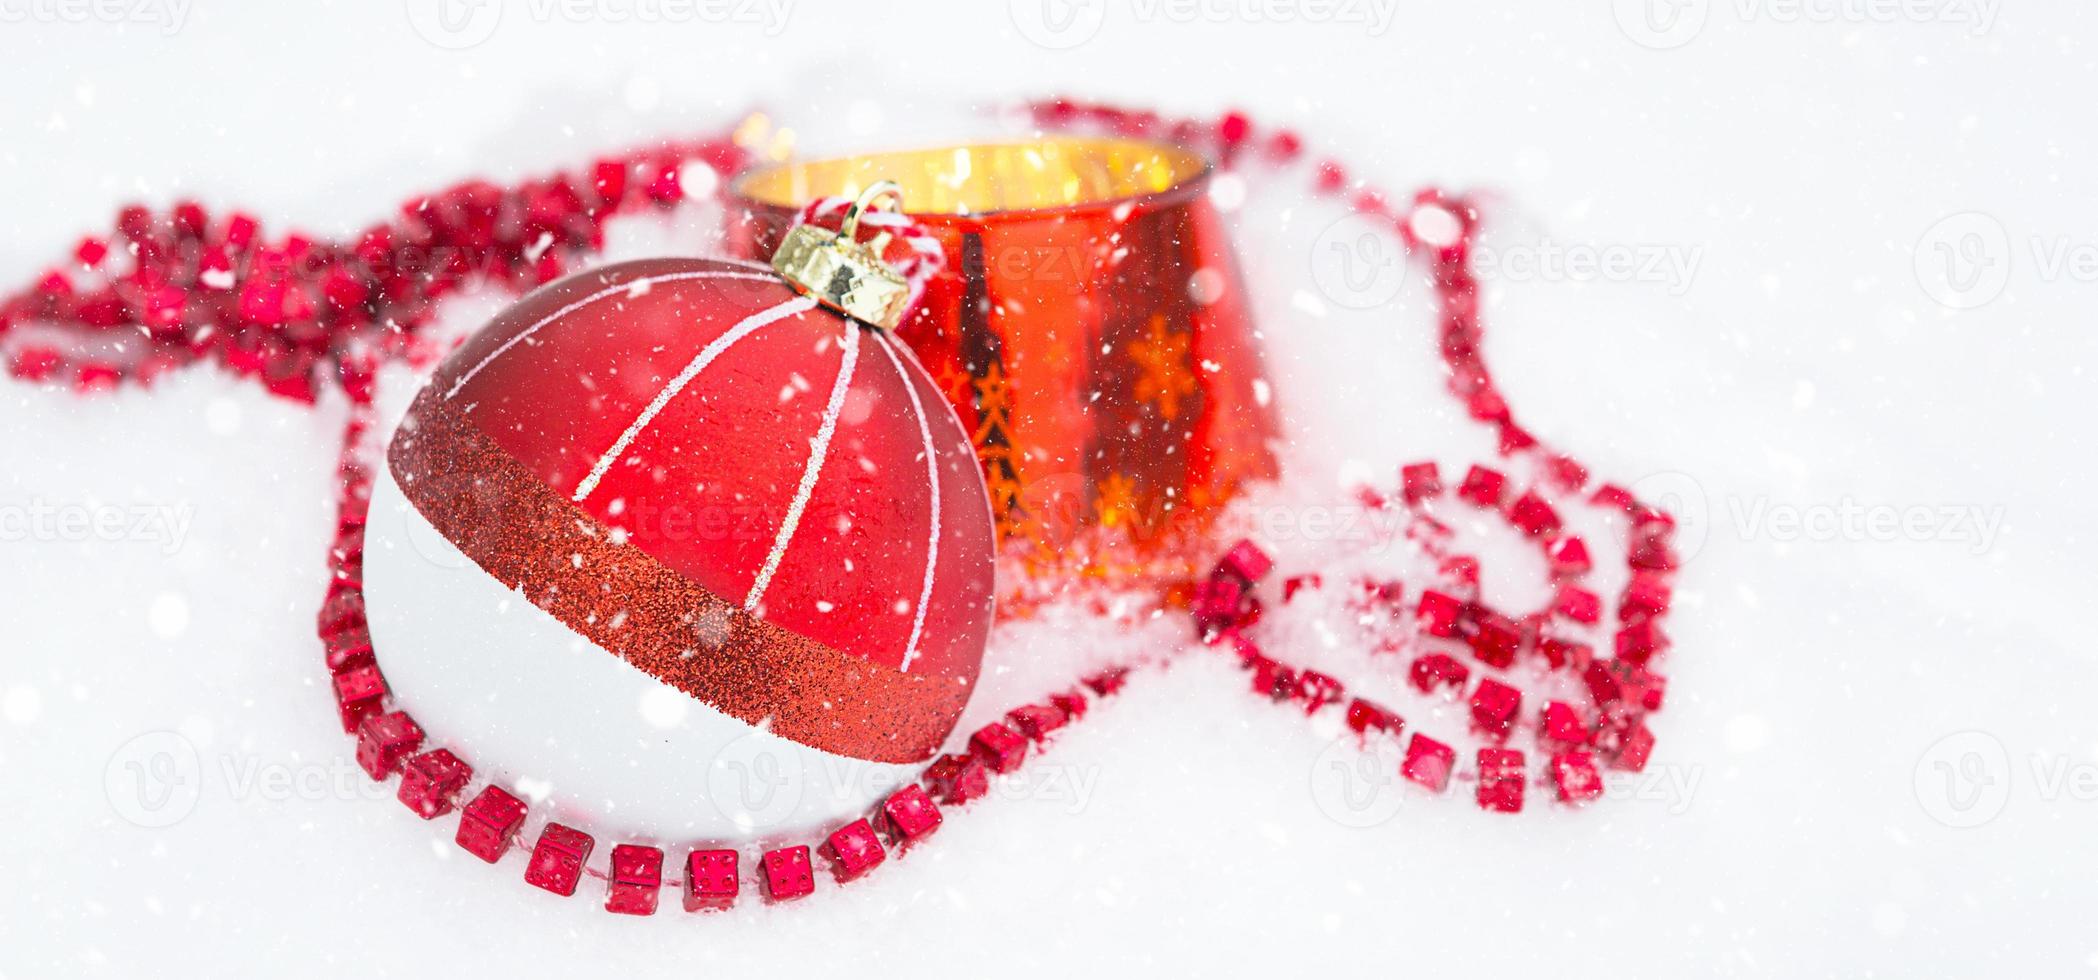 rode kerstbal op natuurlijke witte sneeuw met vierkante kralen en brandende kaars in een glazen kandelaar. kerstmis, nieuwjaar buiten. sneeuwval, feestelijke sfeer van sprookjes en magie, straatdecoratie. foto